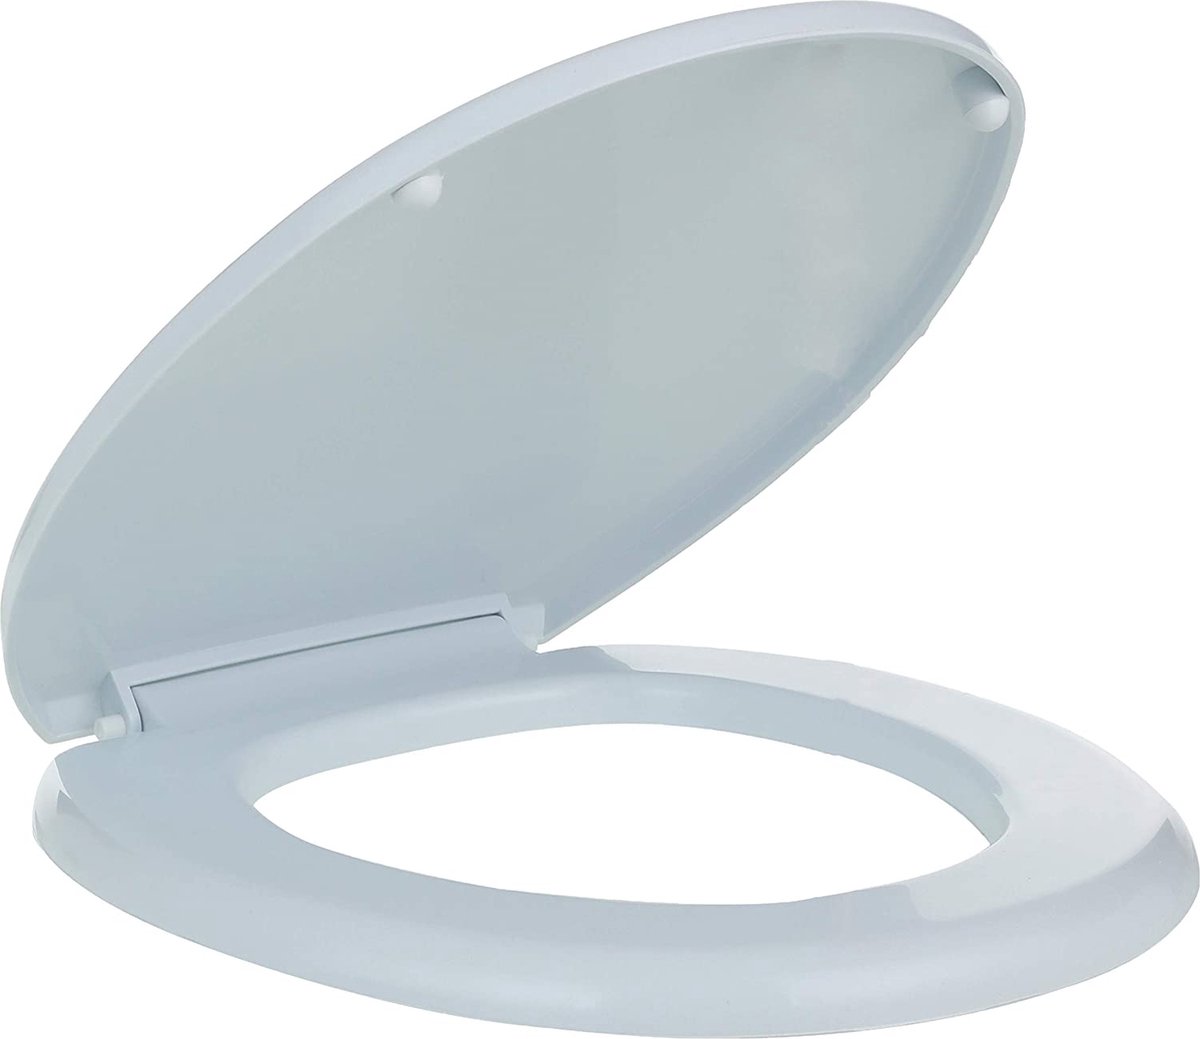 Celik Ayna Toiletbril – Wc Bril Wit – Wc Brillen met Deksel – Kunststof Bevestiging